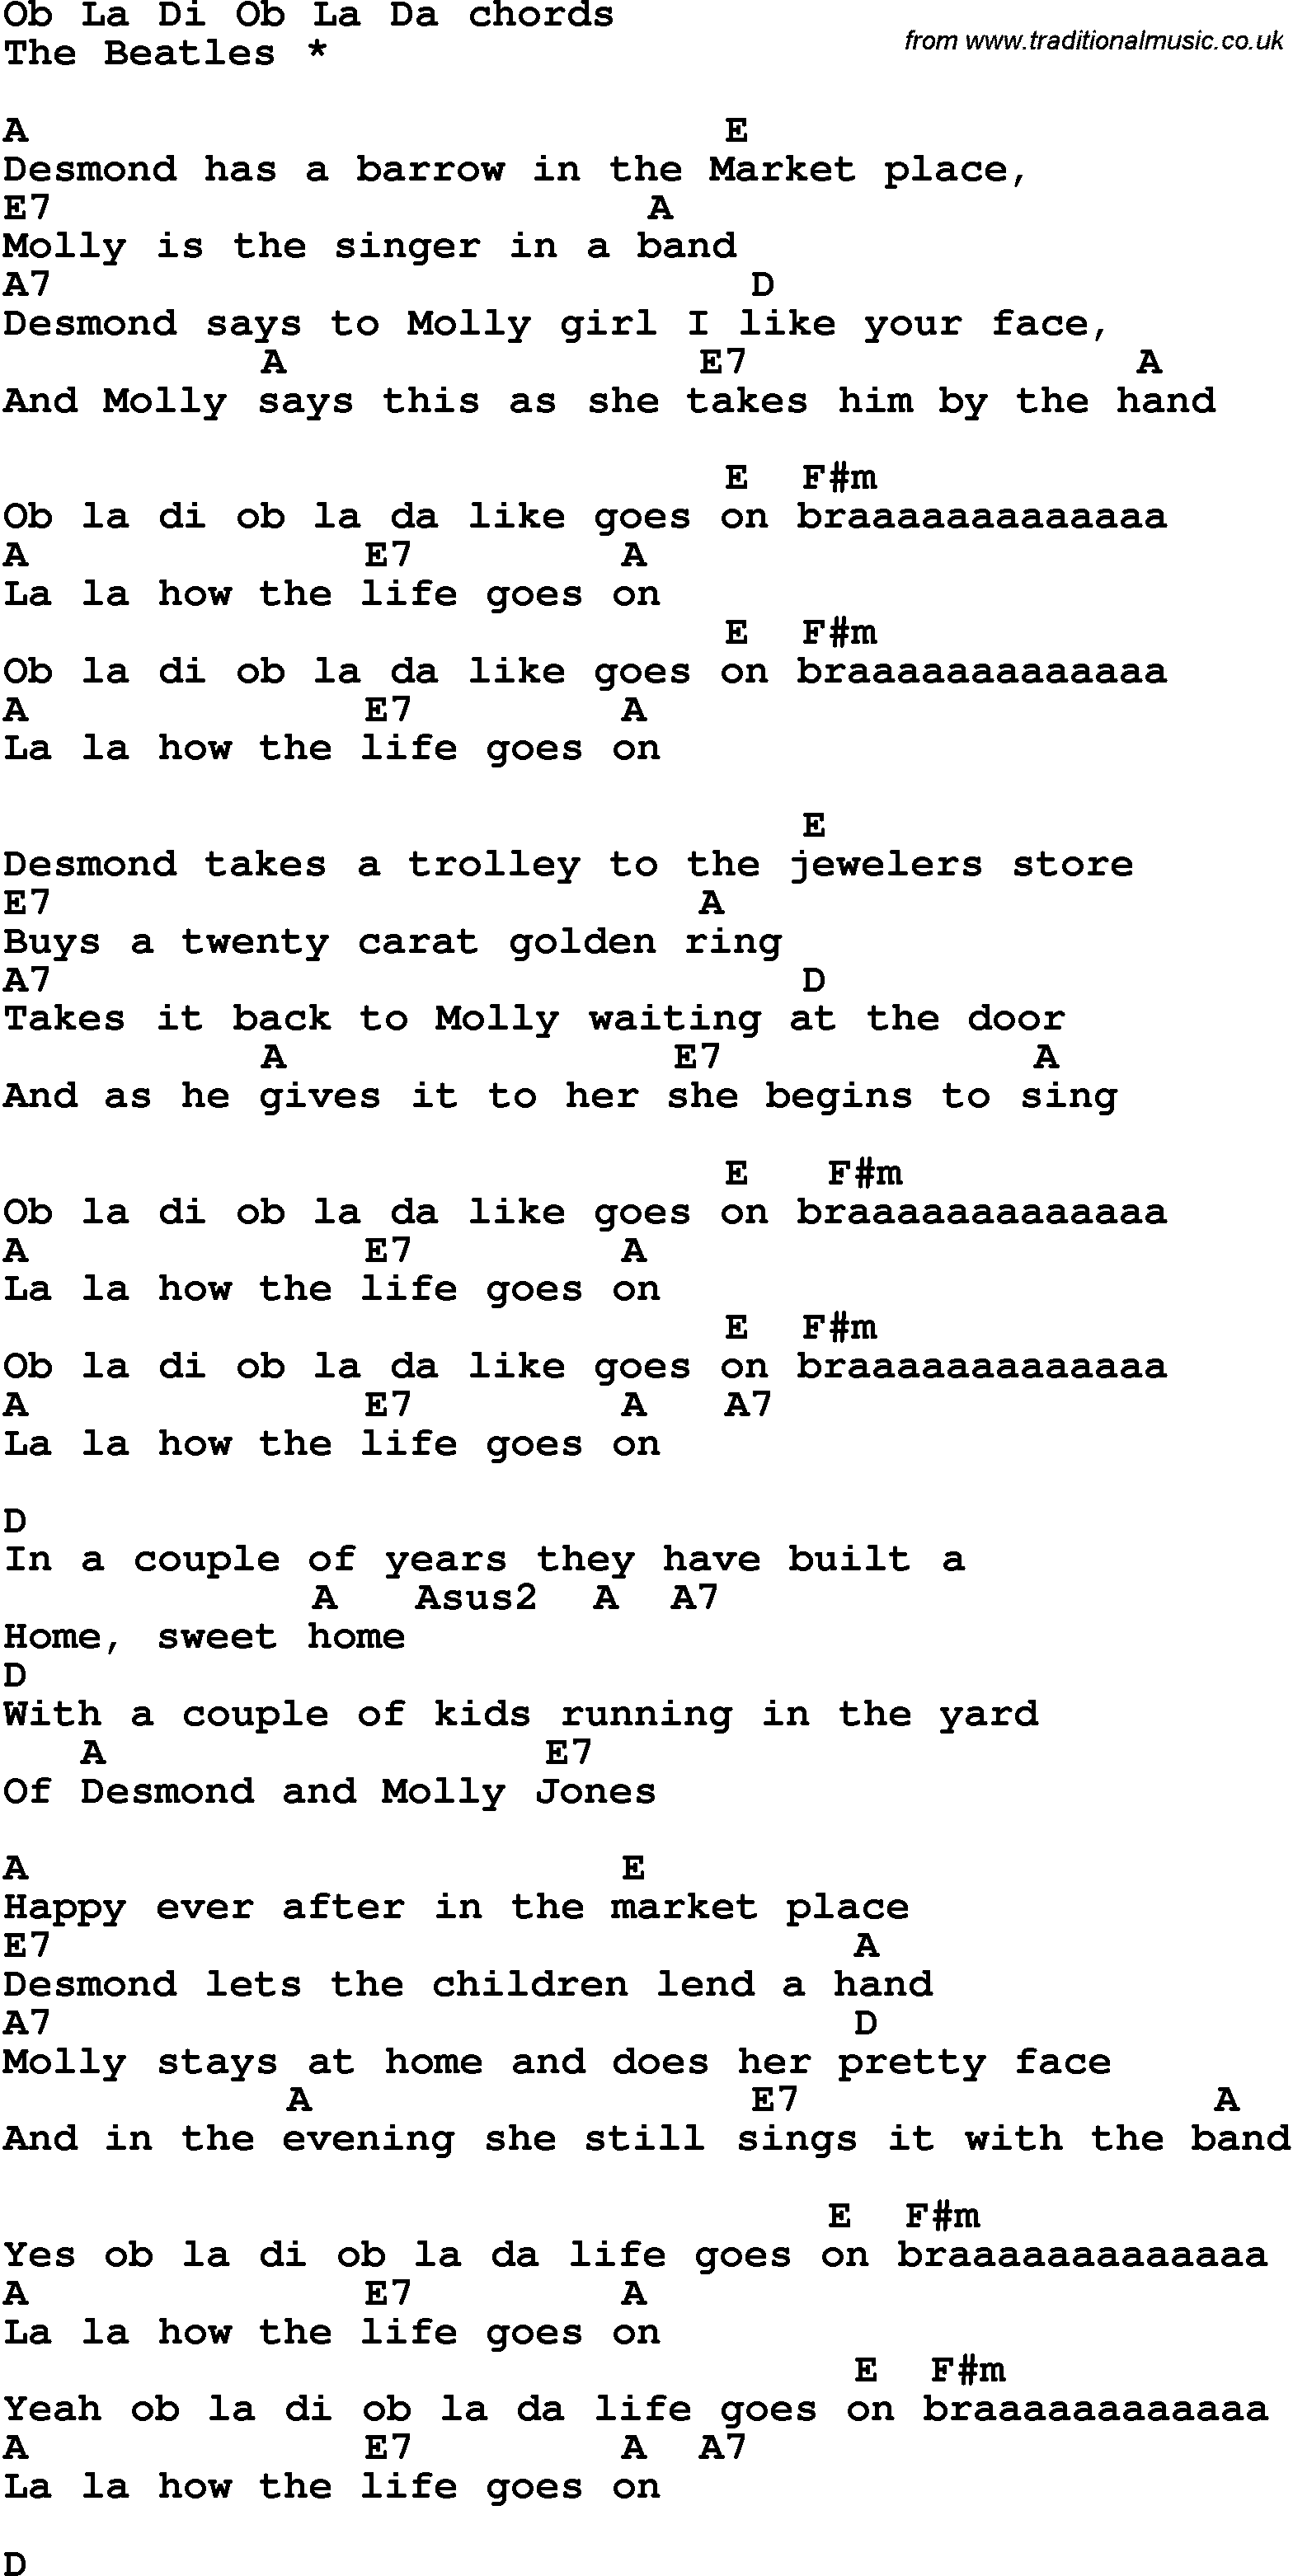 Song lyrics with guitar chords for Ob La Di Ob La Da - The Beatles.